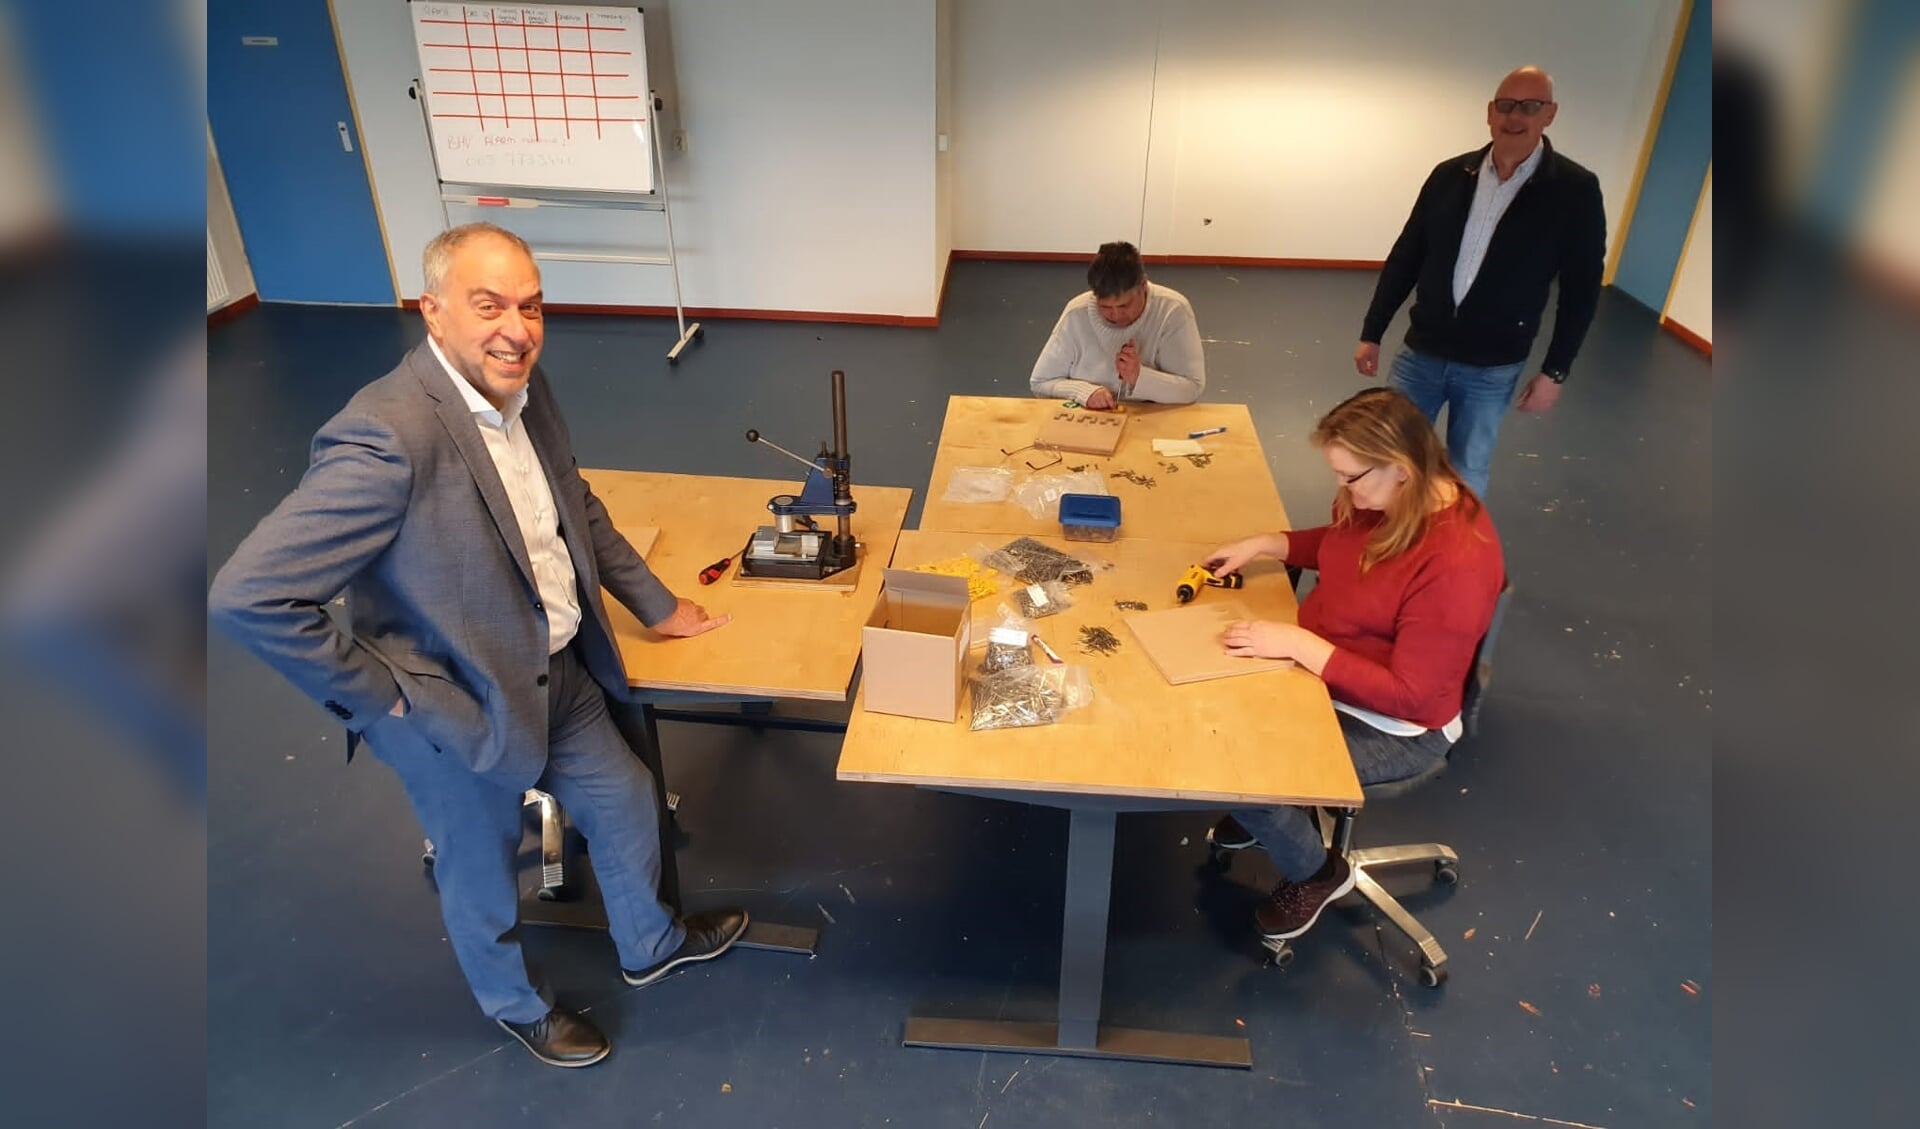 vlnr: 
Wethouder Bert van Swam, Nel, Petra en Ben van den Heuvel (nieuwe praktijkbegeleider)
